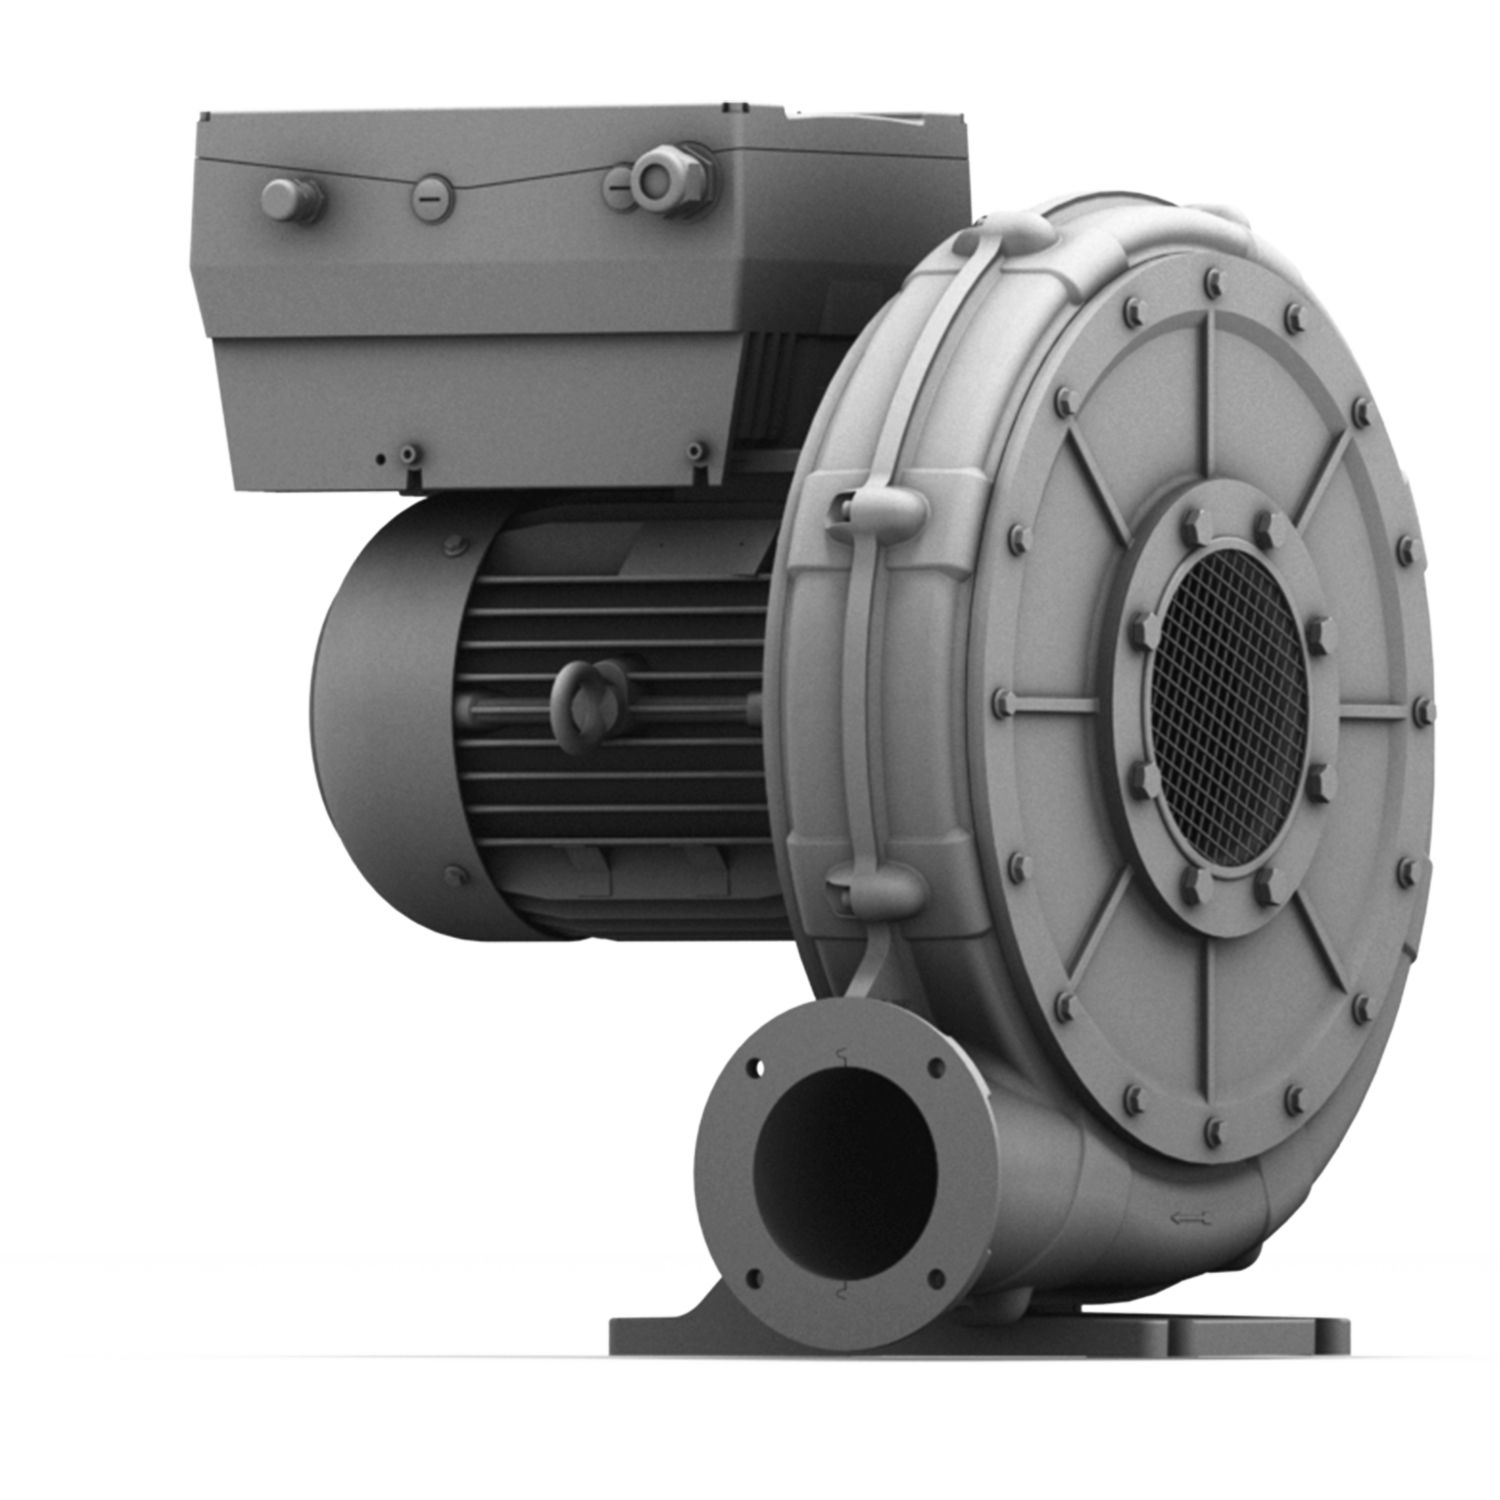 Hrd 60 fu - ventilateur atex - elektror - jusqu'à 97 m³/min_0